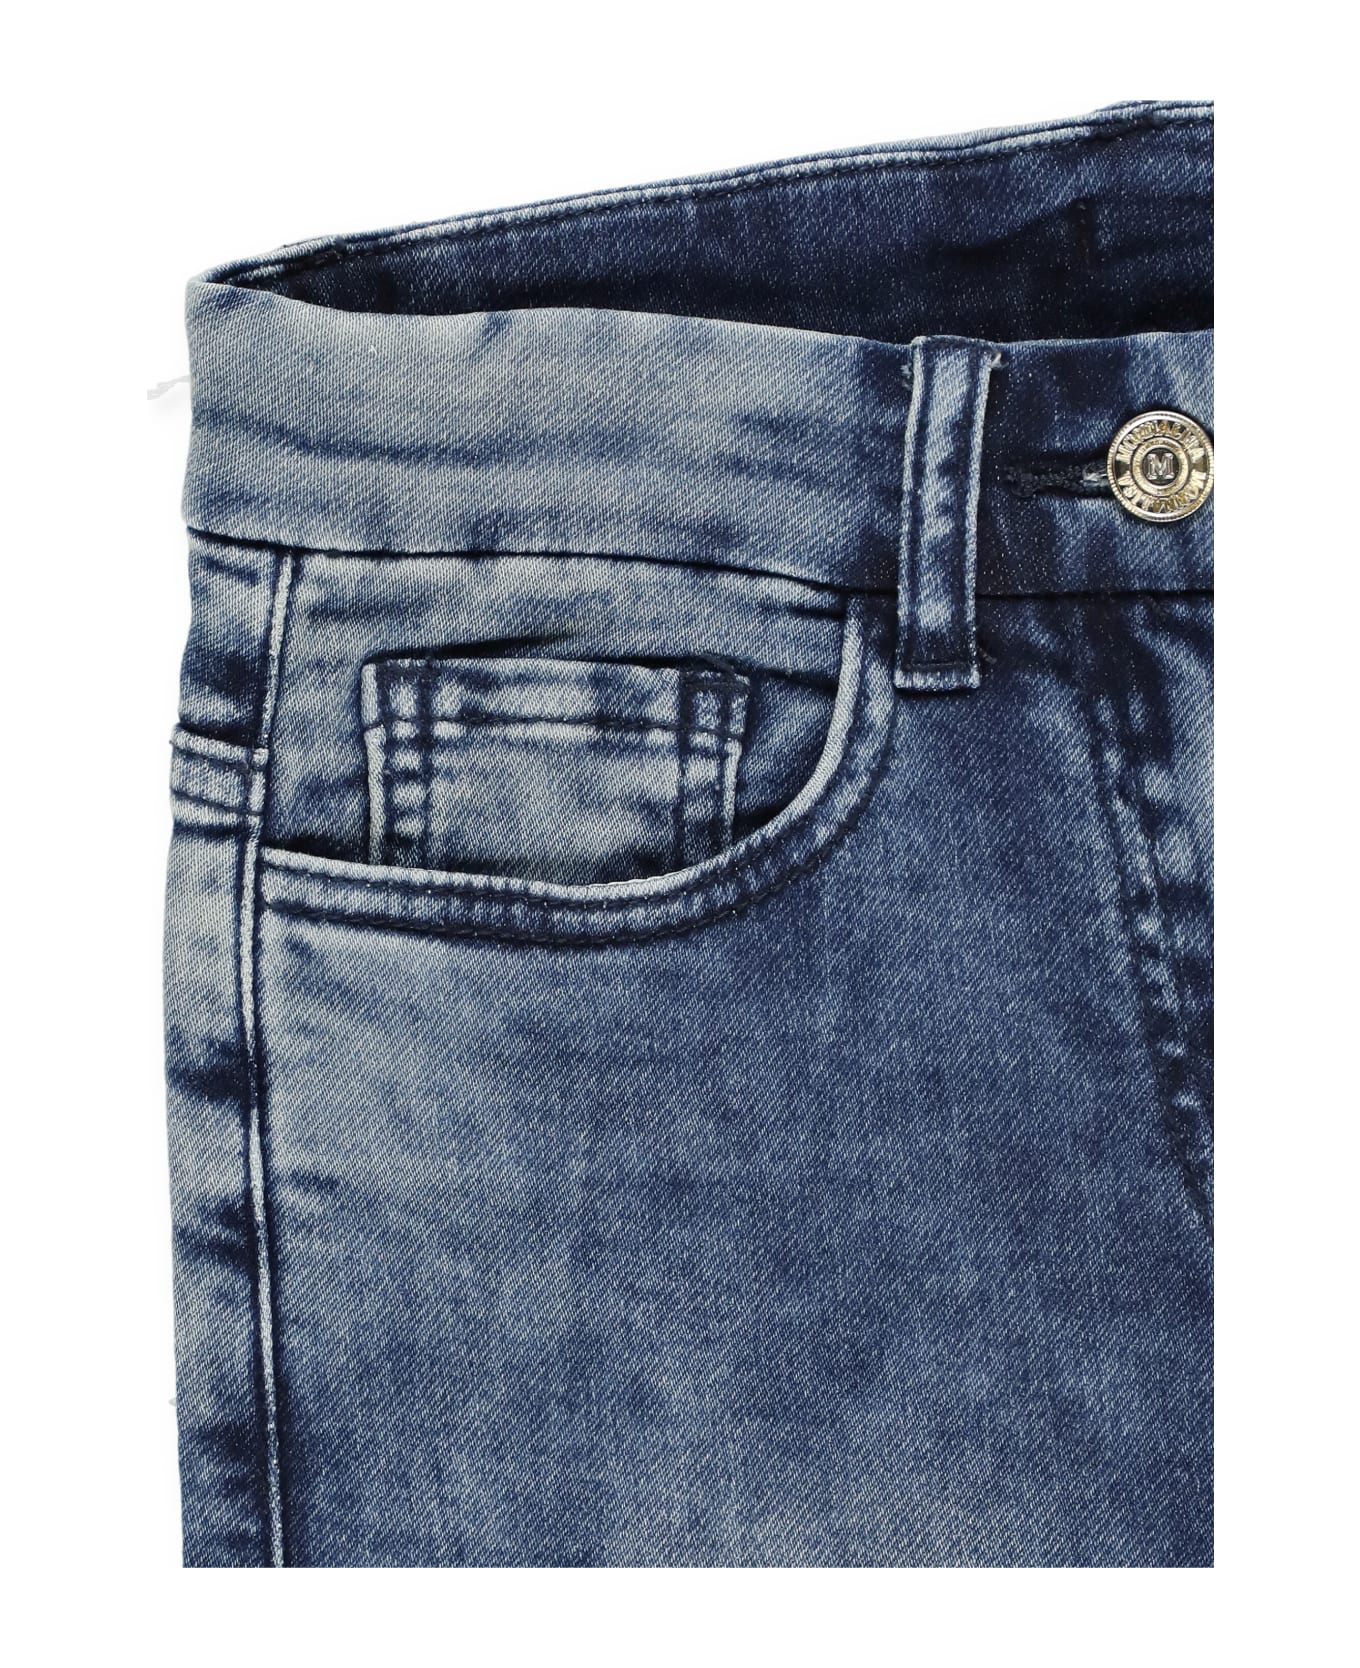 Monnalisa Cotton Jeans - DENIM BLUE